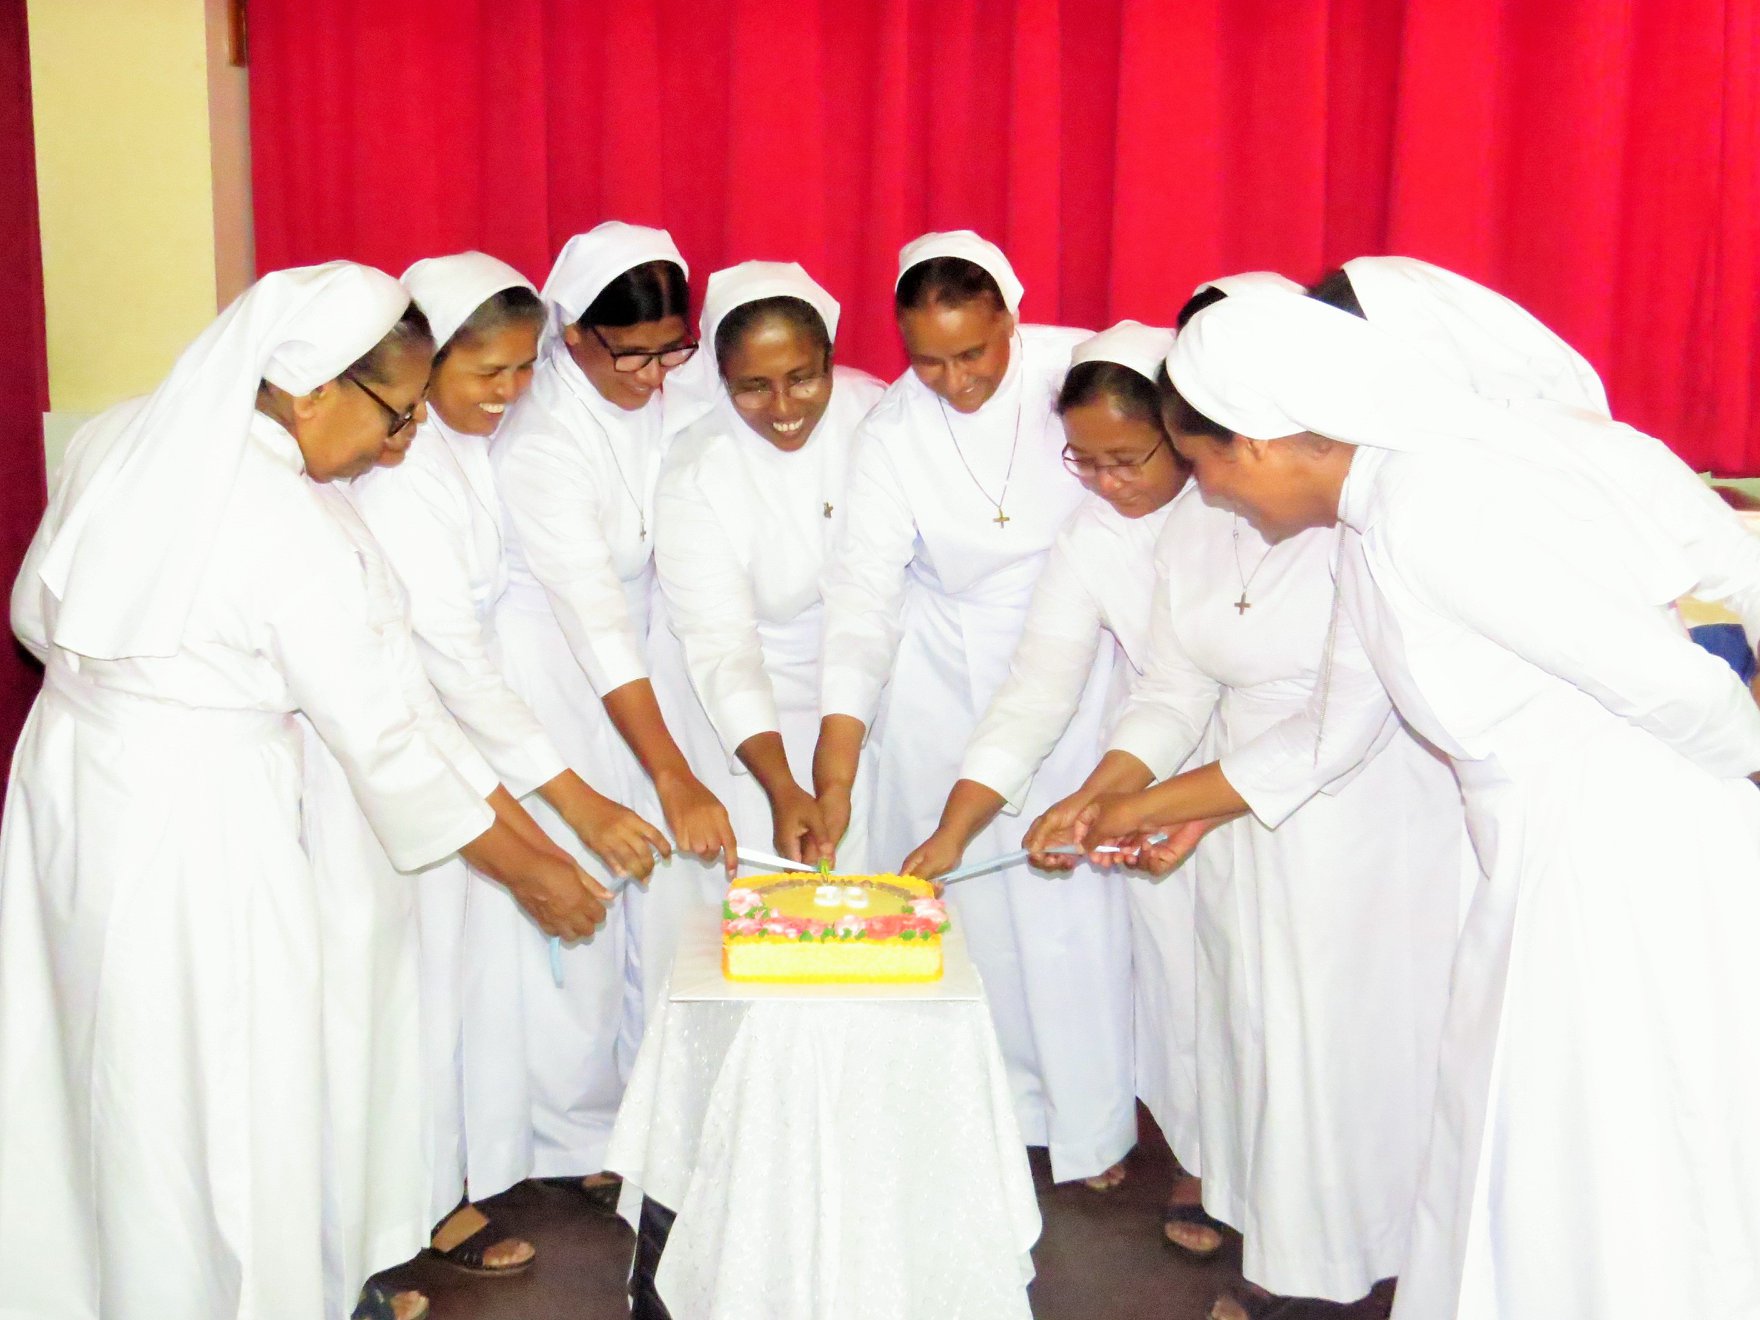 sisters of charity at Dayamina Sri Lanka